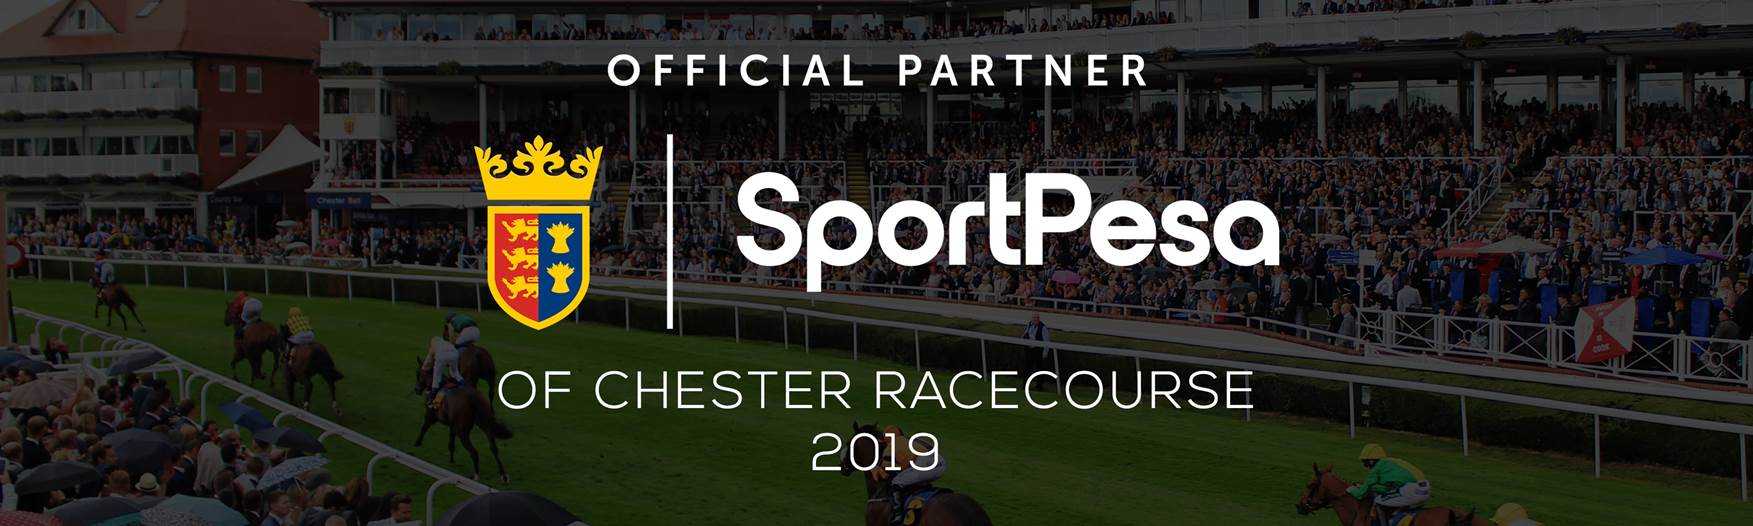 Chester Racecourse Partnership